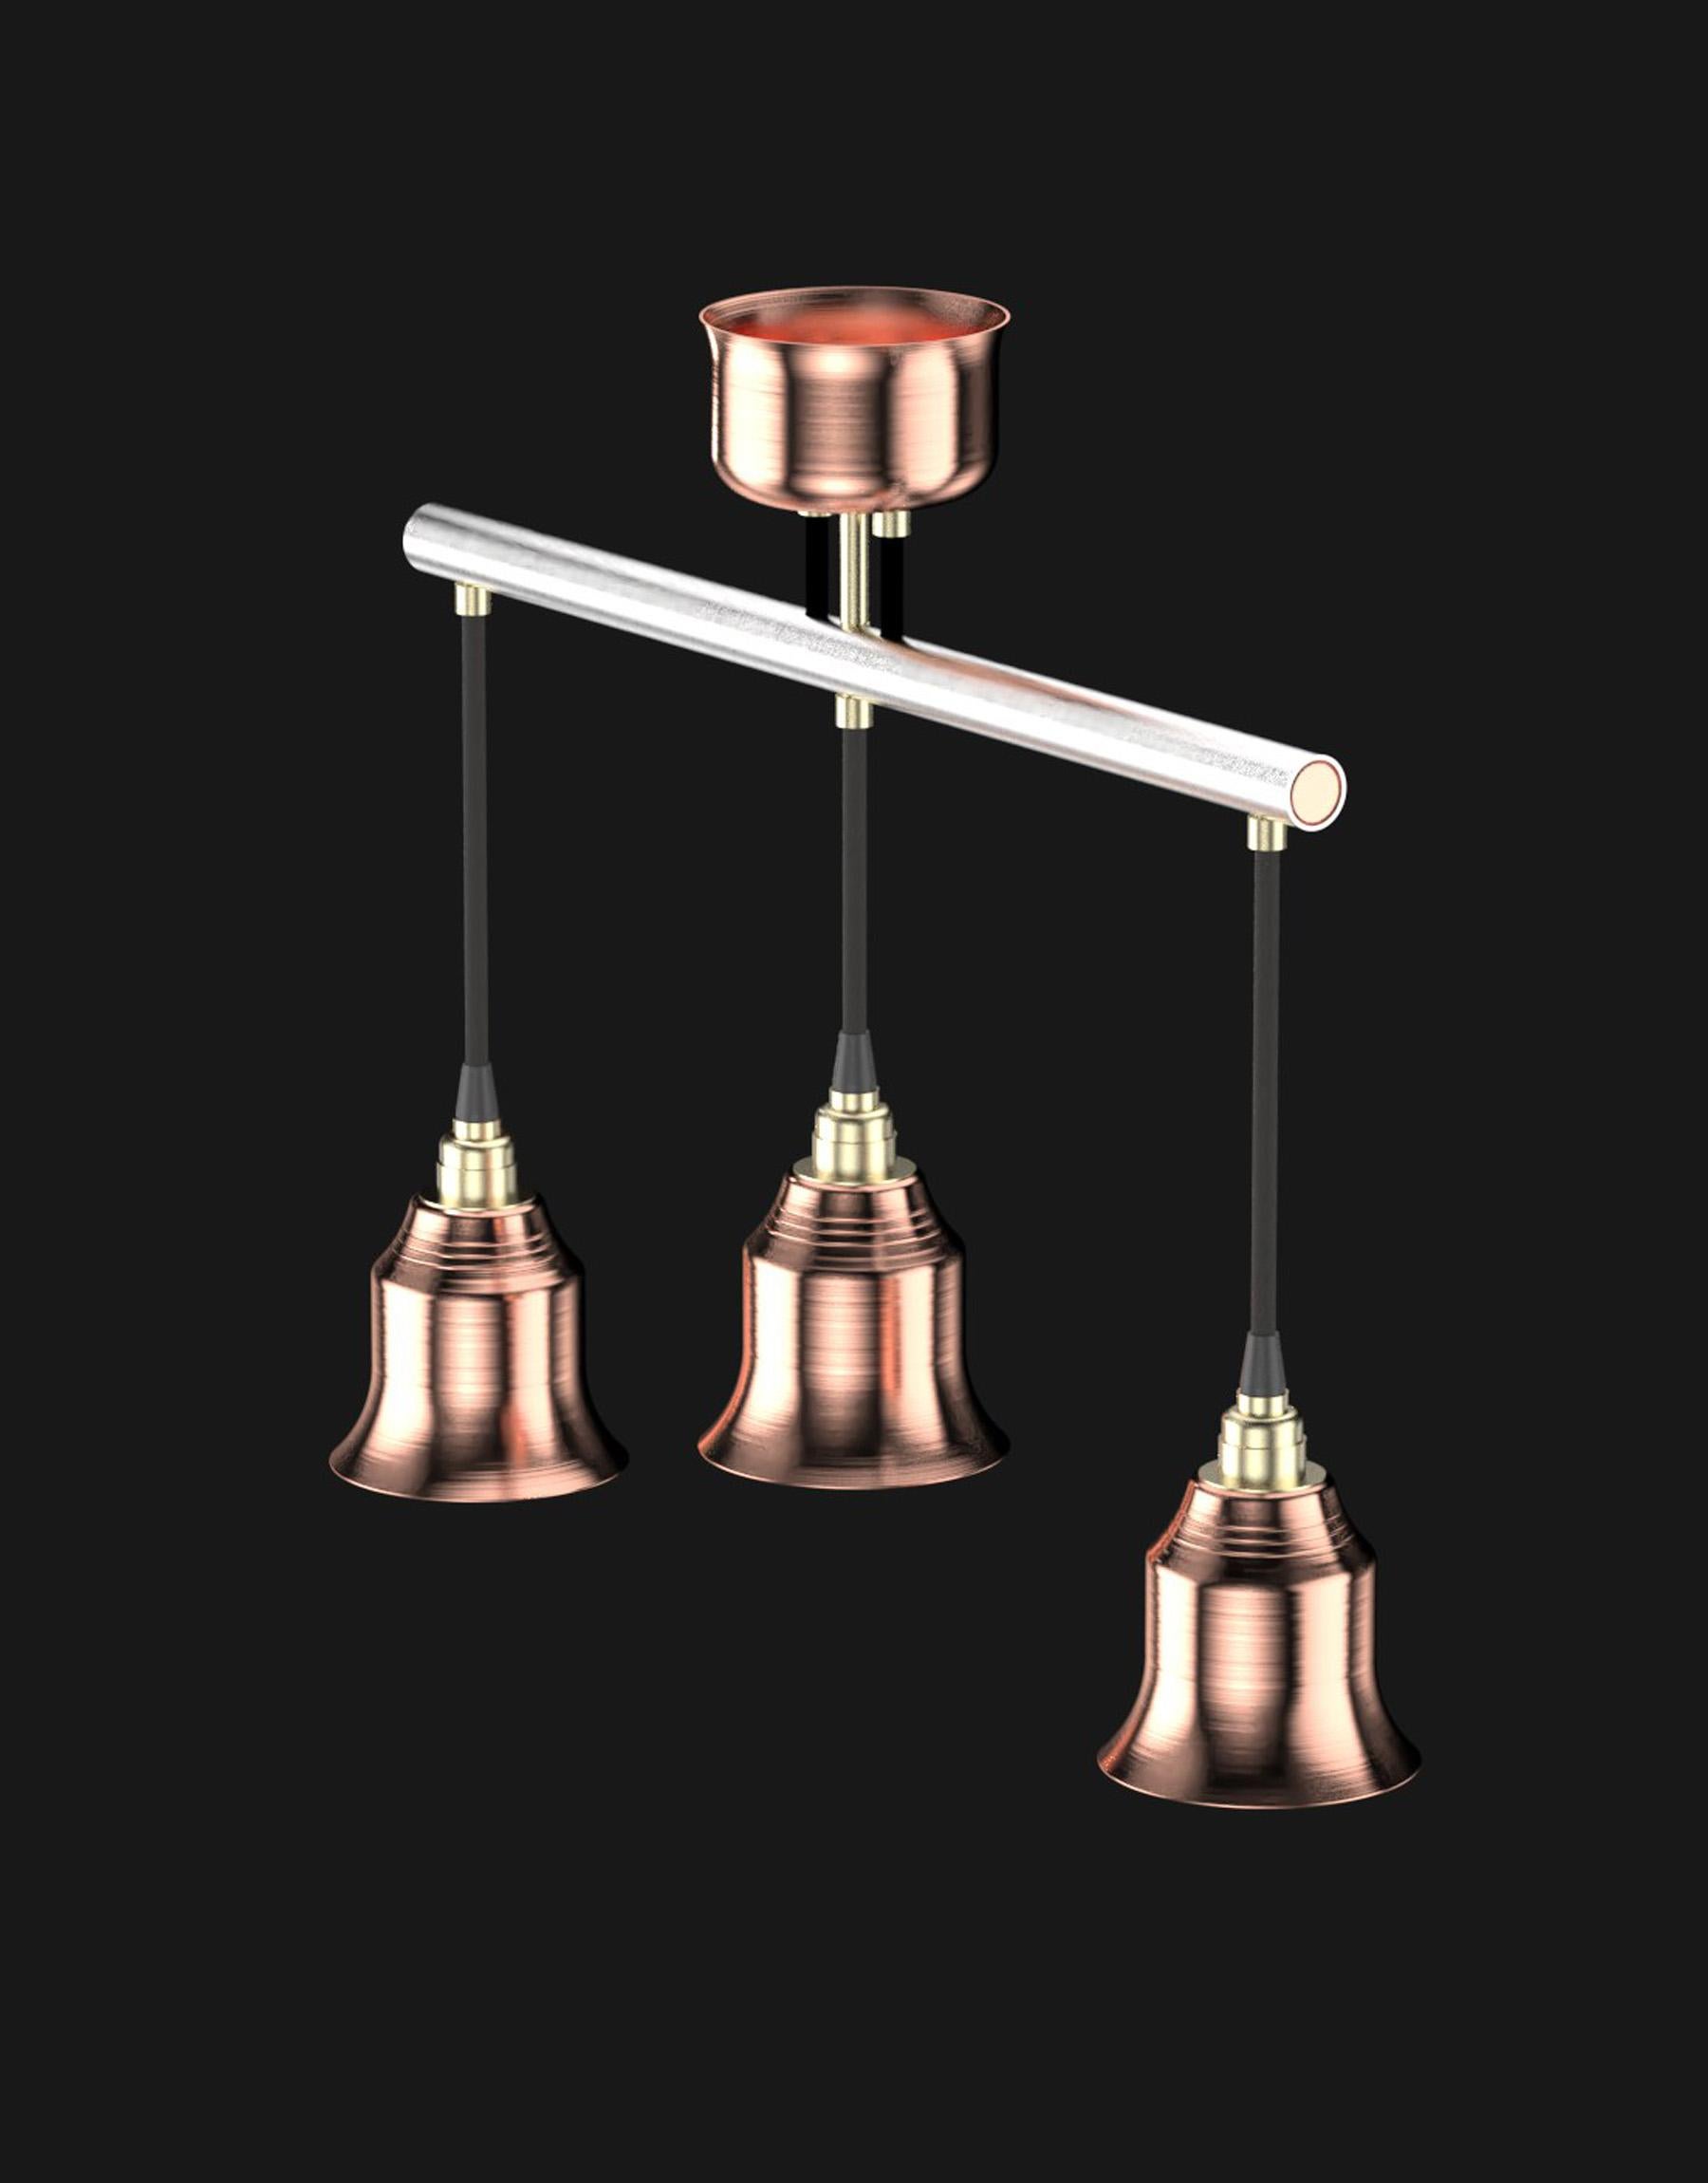 Industrial Edimate Stainless Steel / Copper Spot V1 Ceiling Light, Handmade in France For Sale